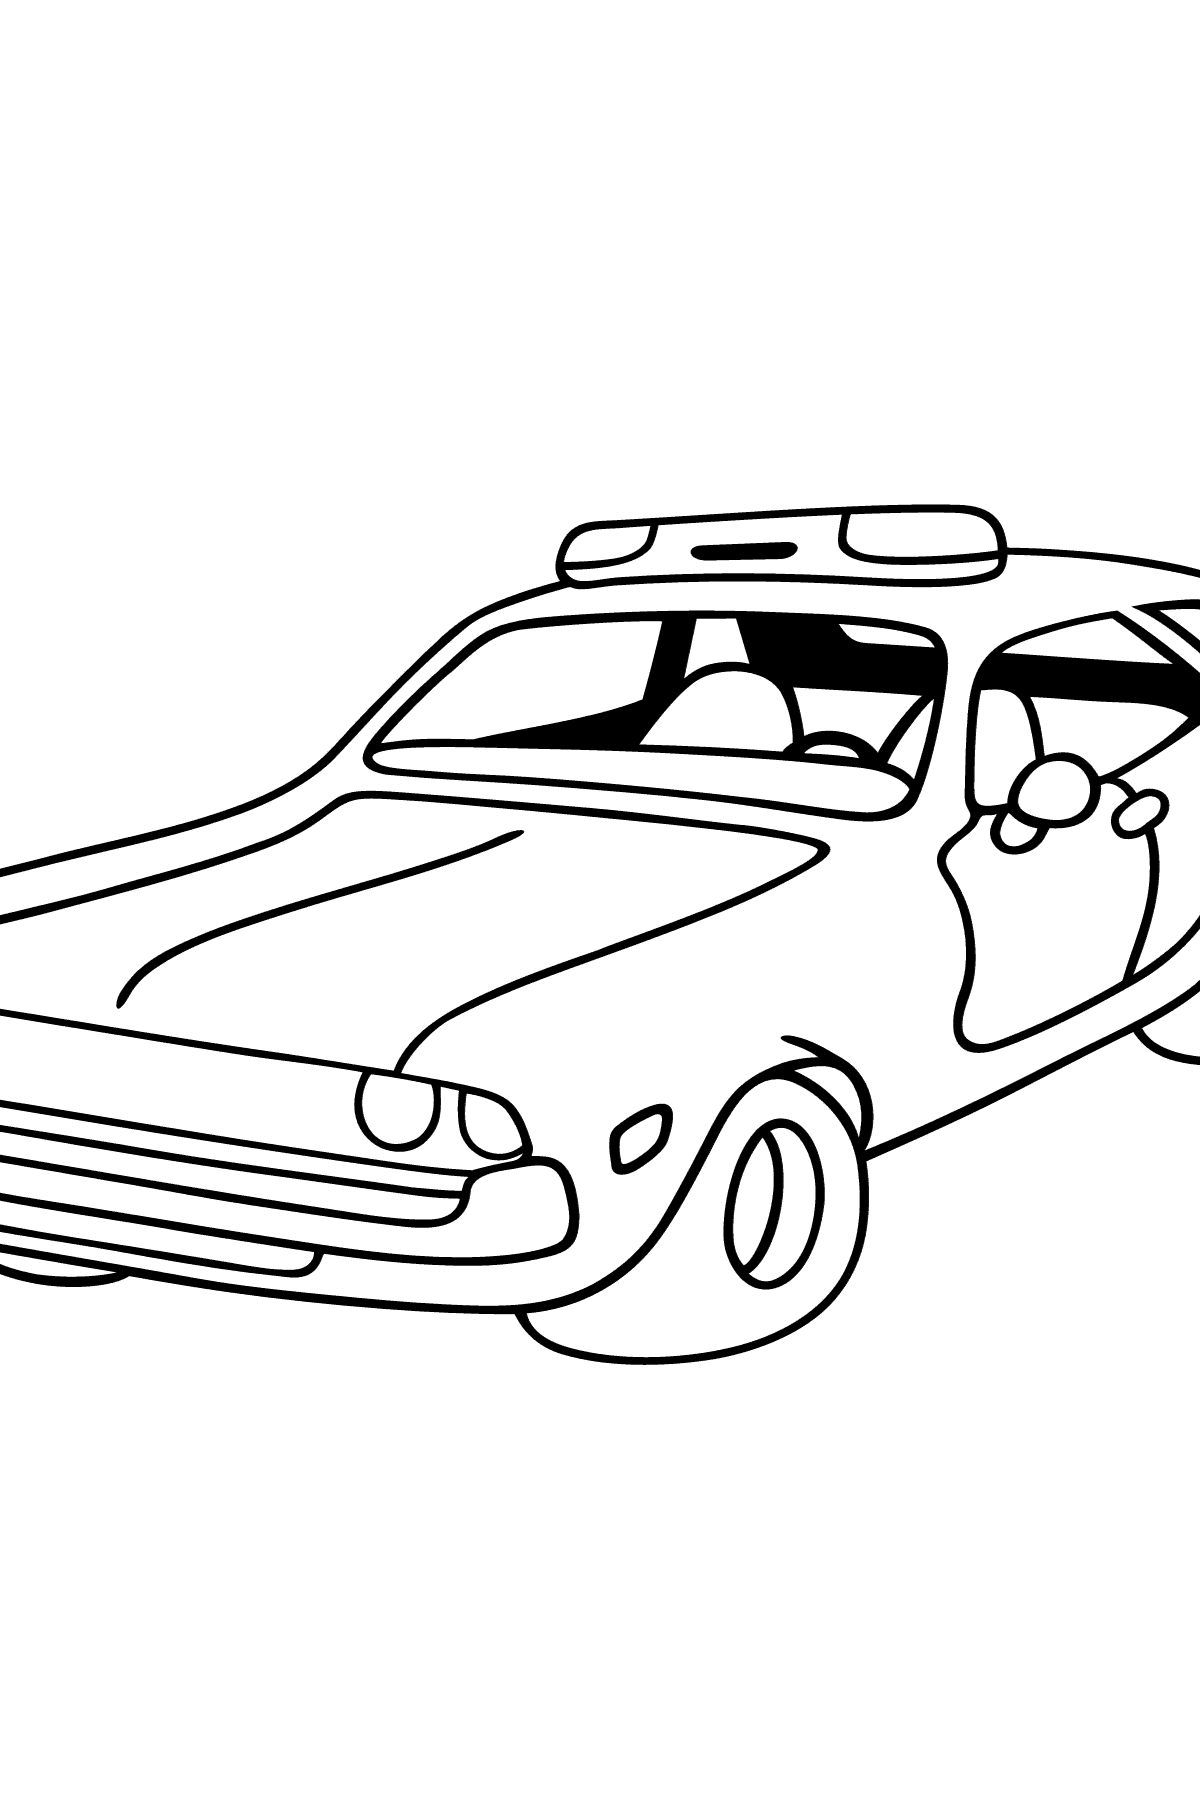 Tegning til farvning bilpolitiet - Tegninger til farvelægning for børn